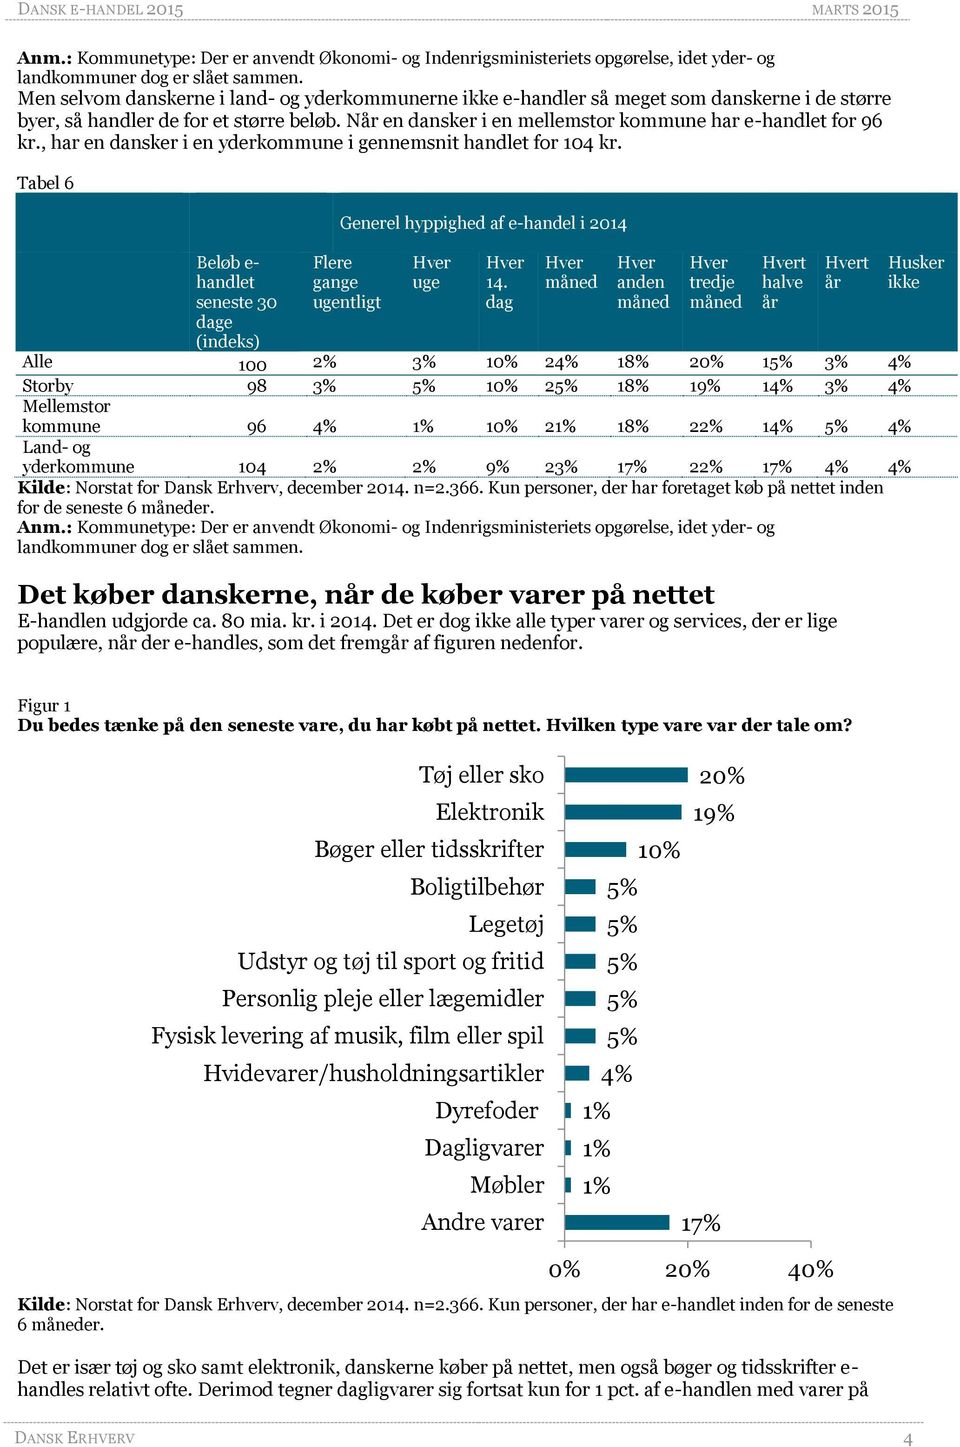 Når en dansker i en mellemstor kommune har e-handlet for 96 kr., har en dansker i en yderkommune i gennemsnit handlet for 104 kr.